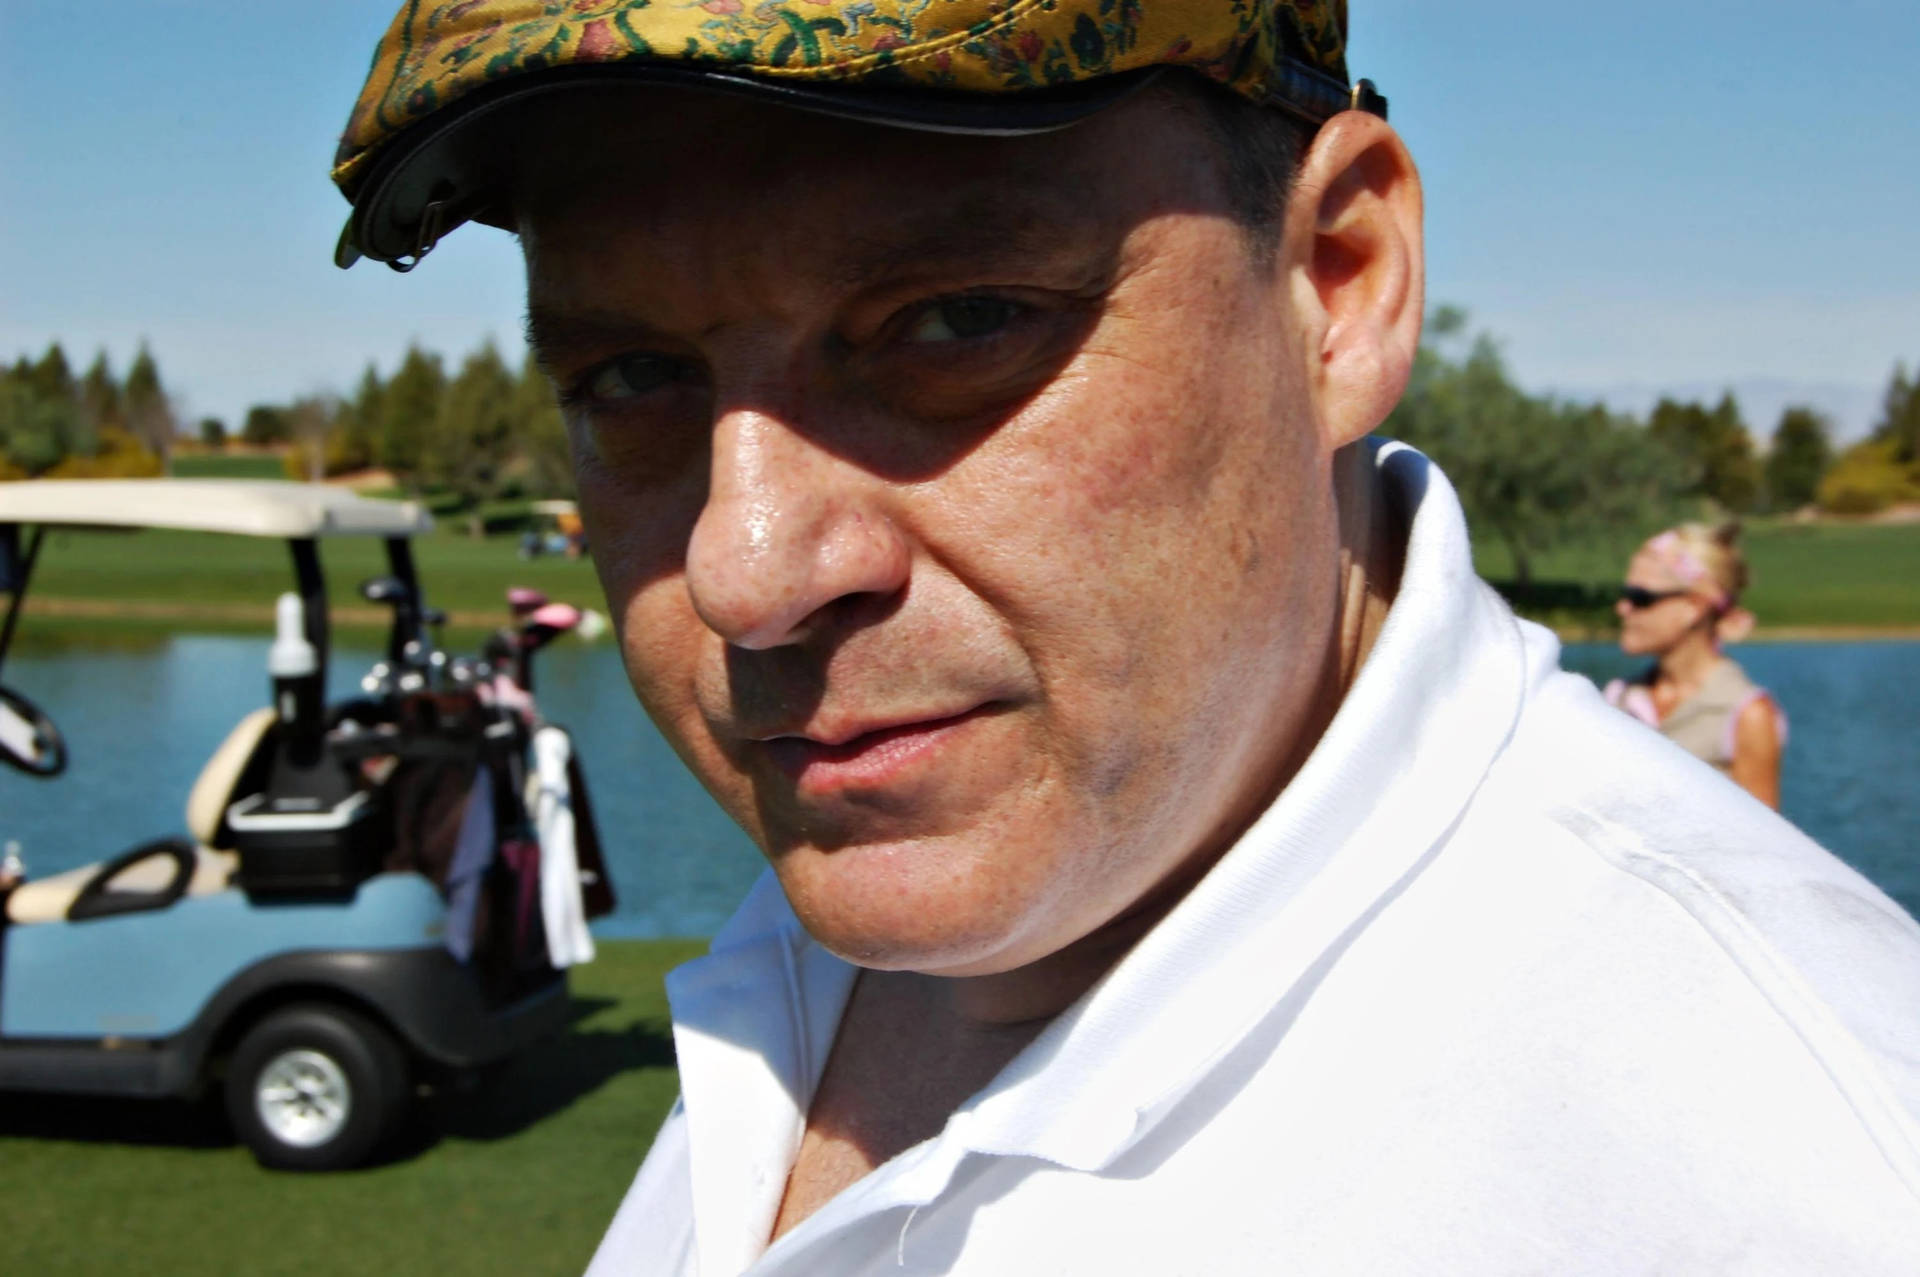 Amerikanskaskådespelaren Tom Sizemore På Golfbanan. Wallpaper